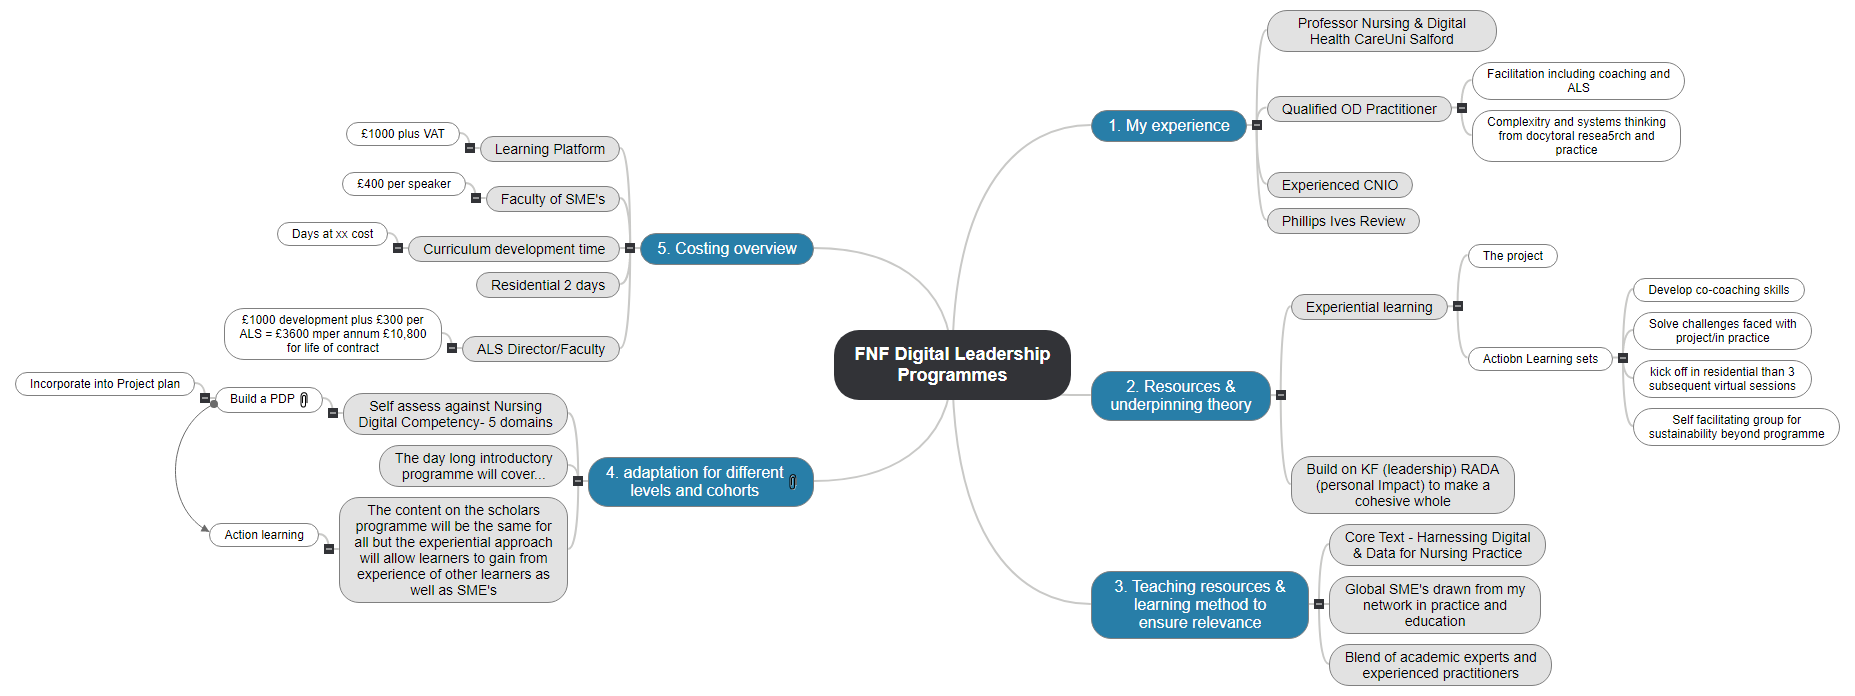 FNF Digital Leadership Programmes1 Mind Map